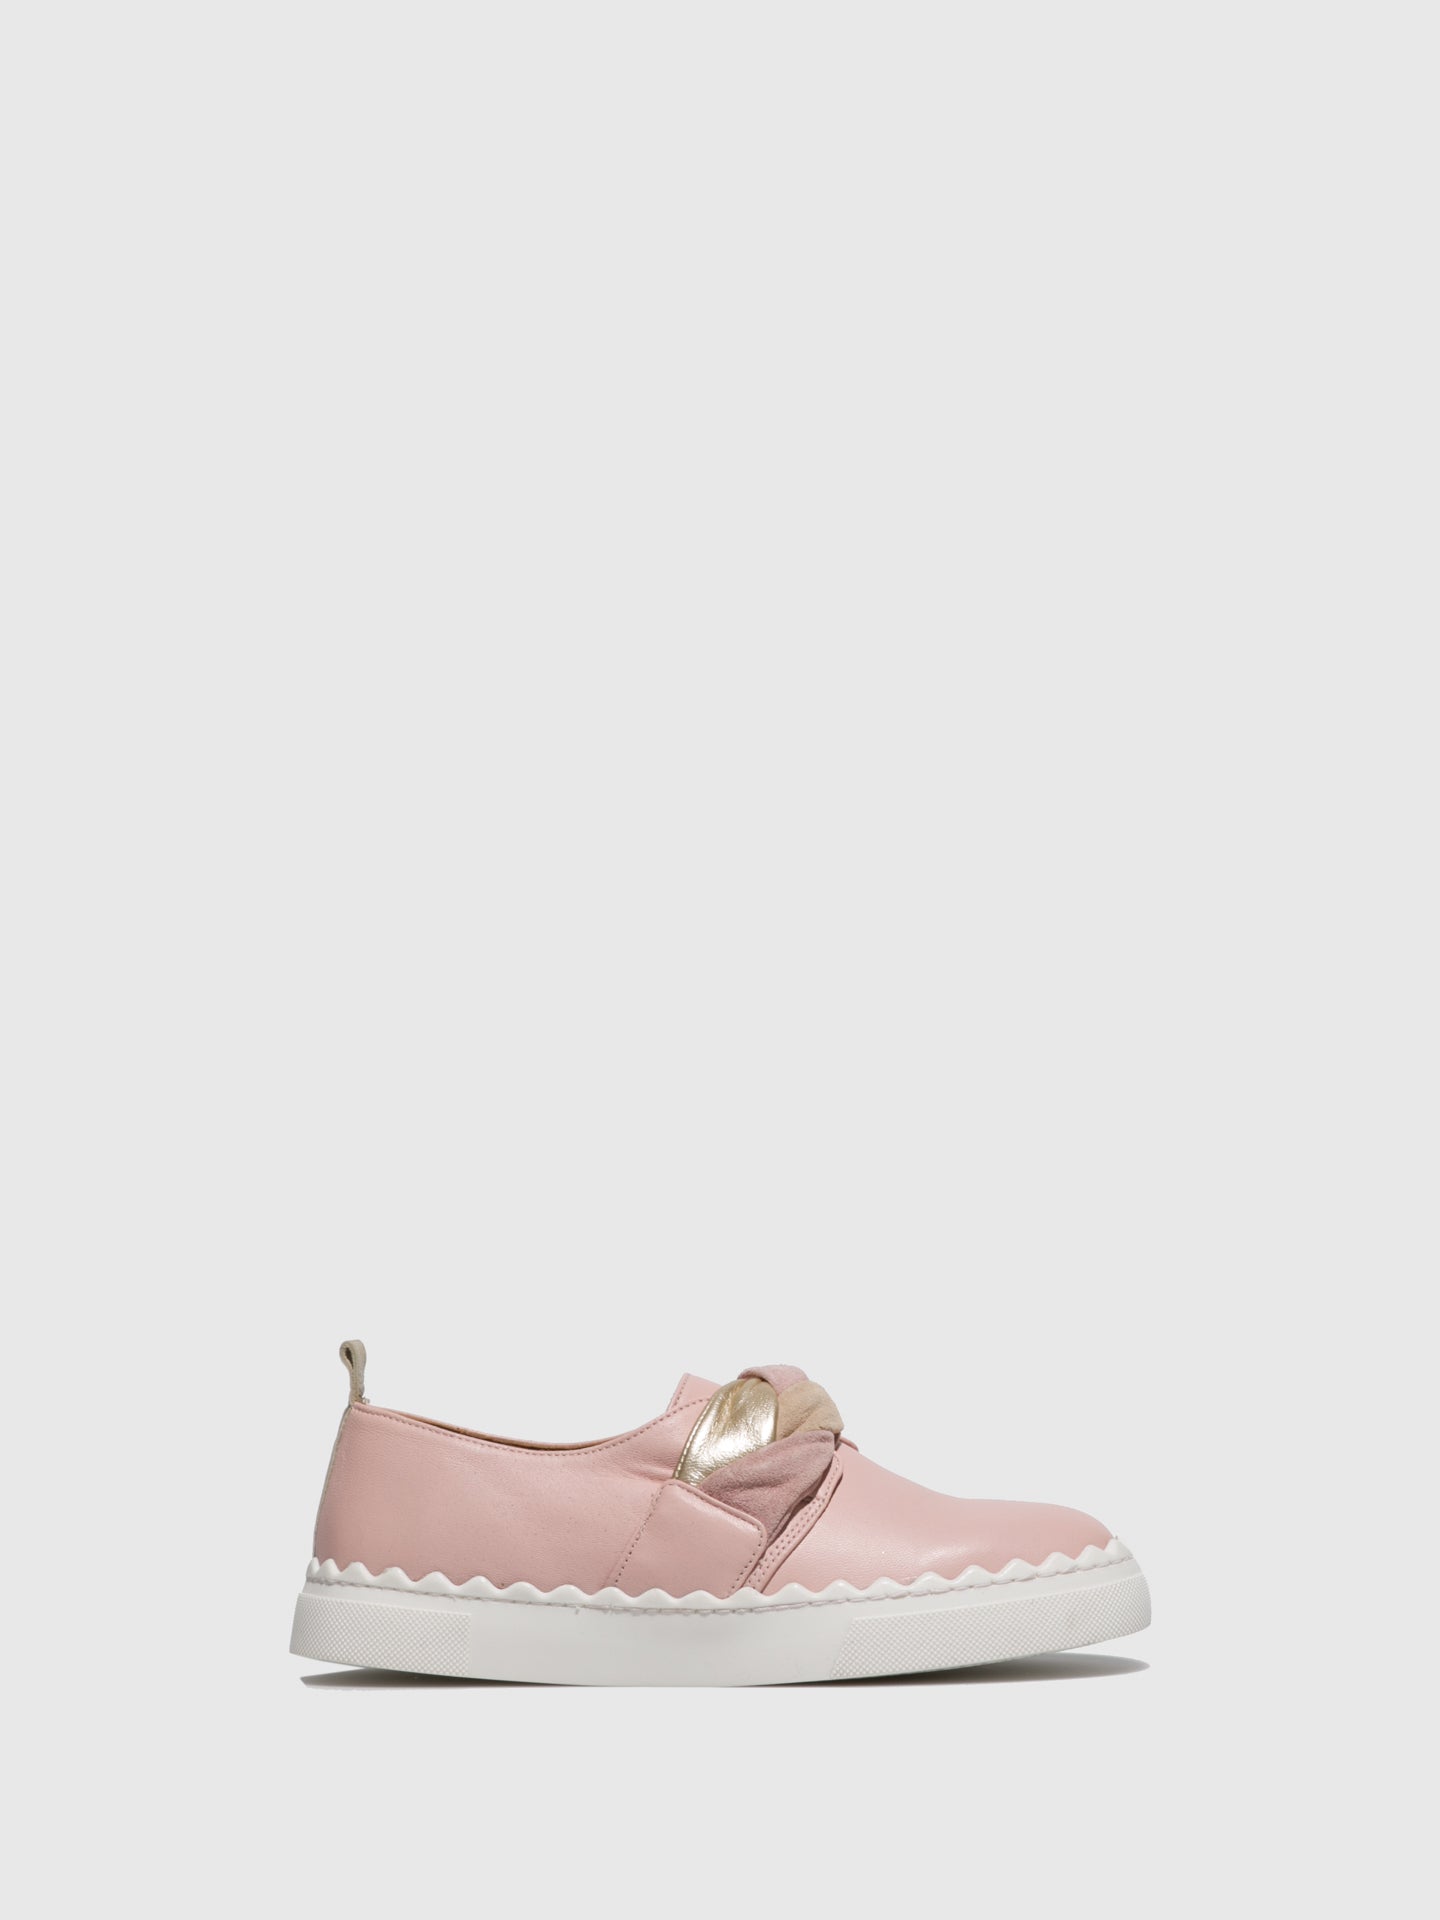 JJ Heitor Pink Slip-on Shoes